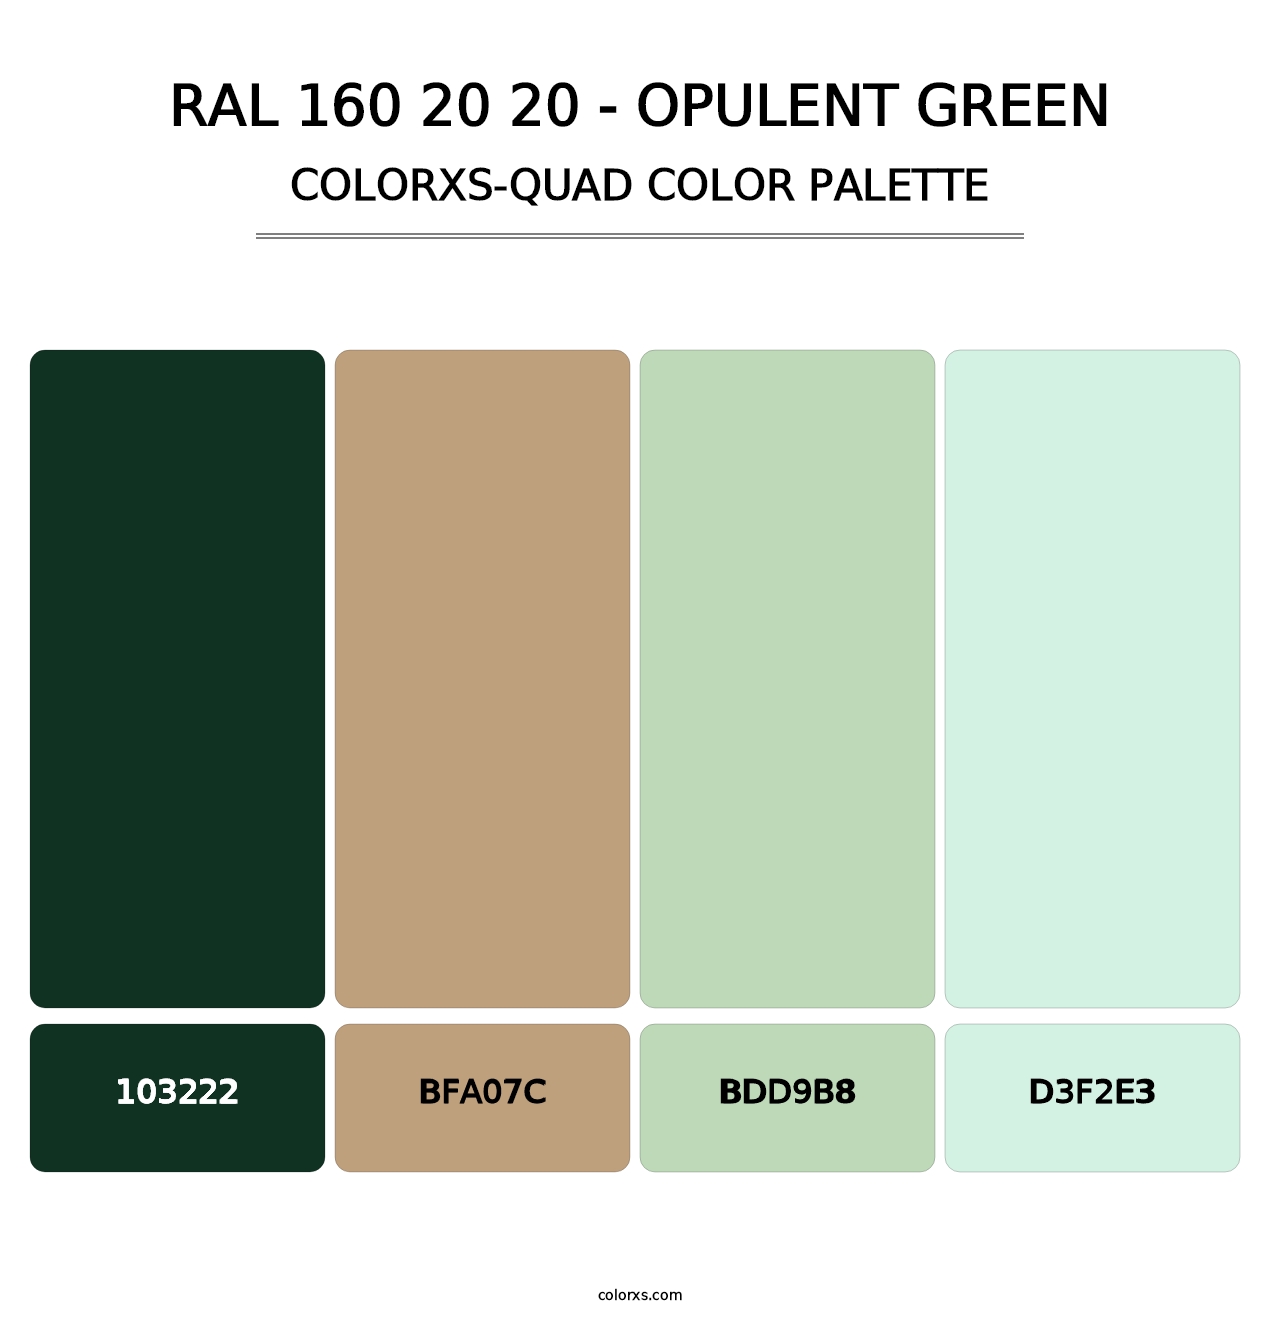 RAL 160 20 20 - Opulent Green - Colorxs Quad Palette